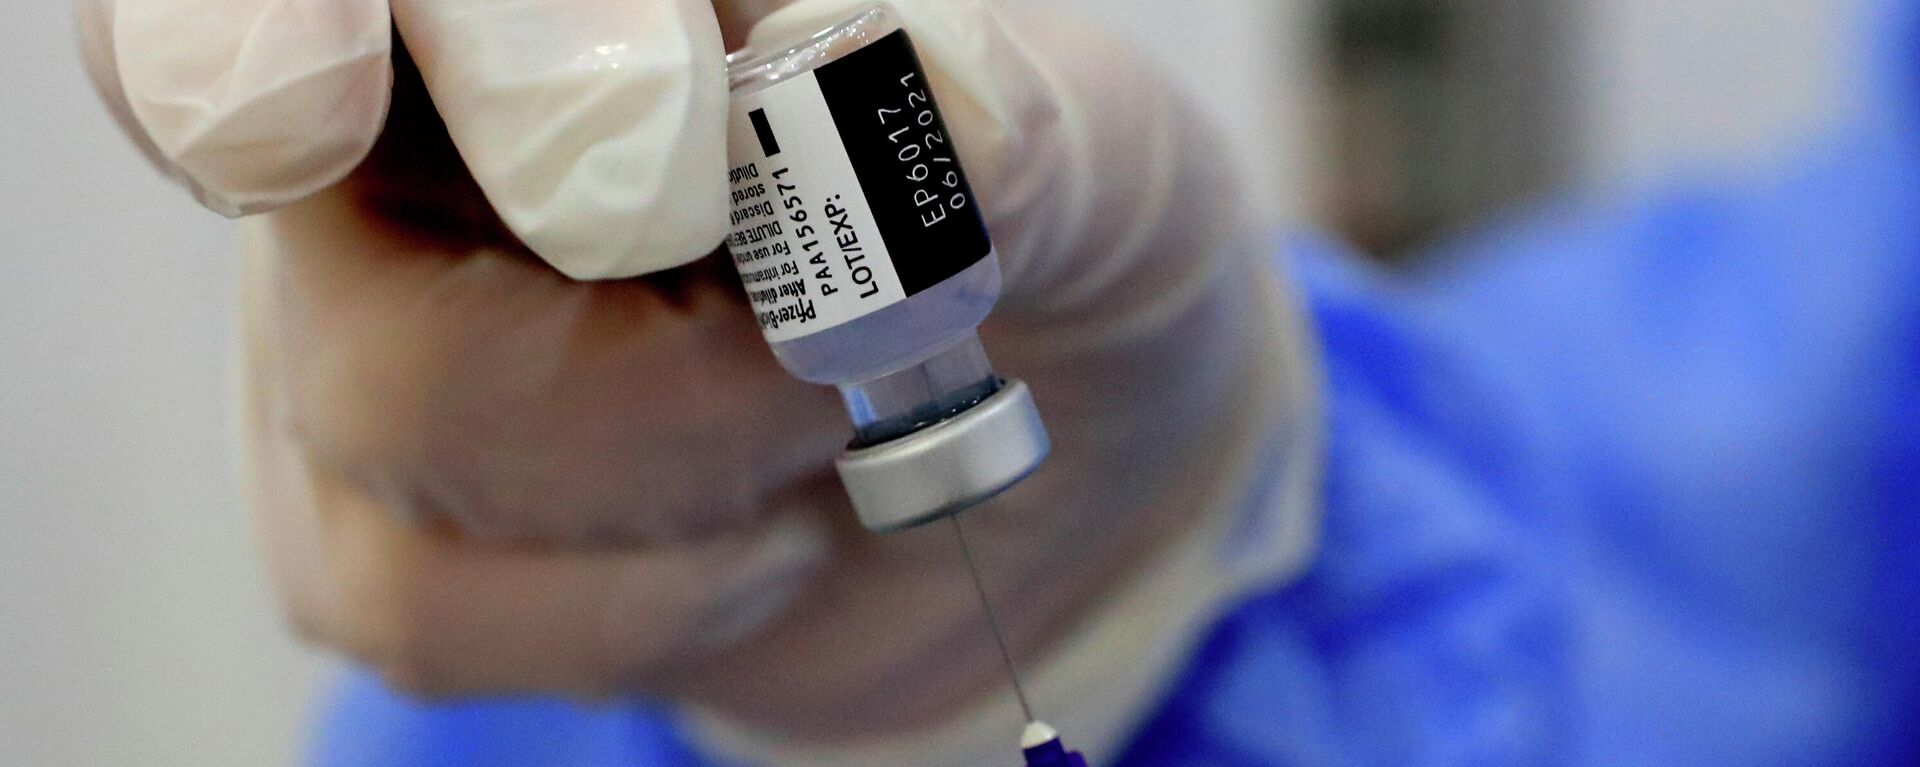 Una enfermera prepara una jeringa de la vacuna contra el coronavirus de Pfizer-BioNTech COVID-19 durante una campaña de vacunación en Beirut, Líbano, 16 de febrero de 2021. - Sputnik Mundo, 1920, 11.03.2021